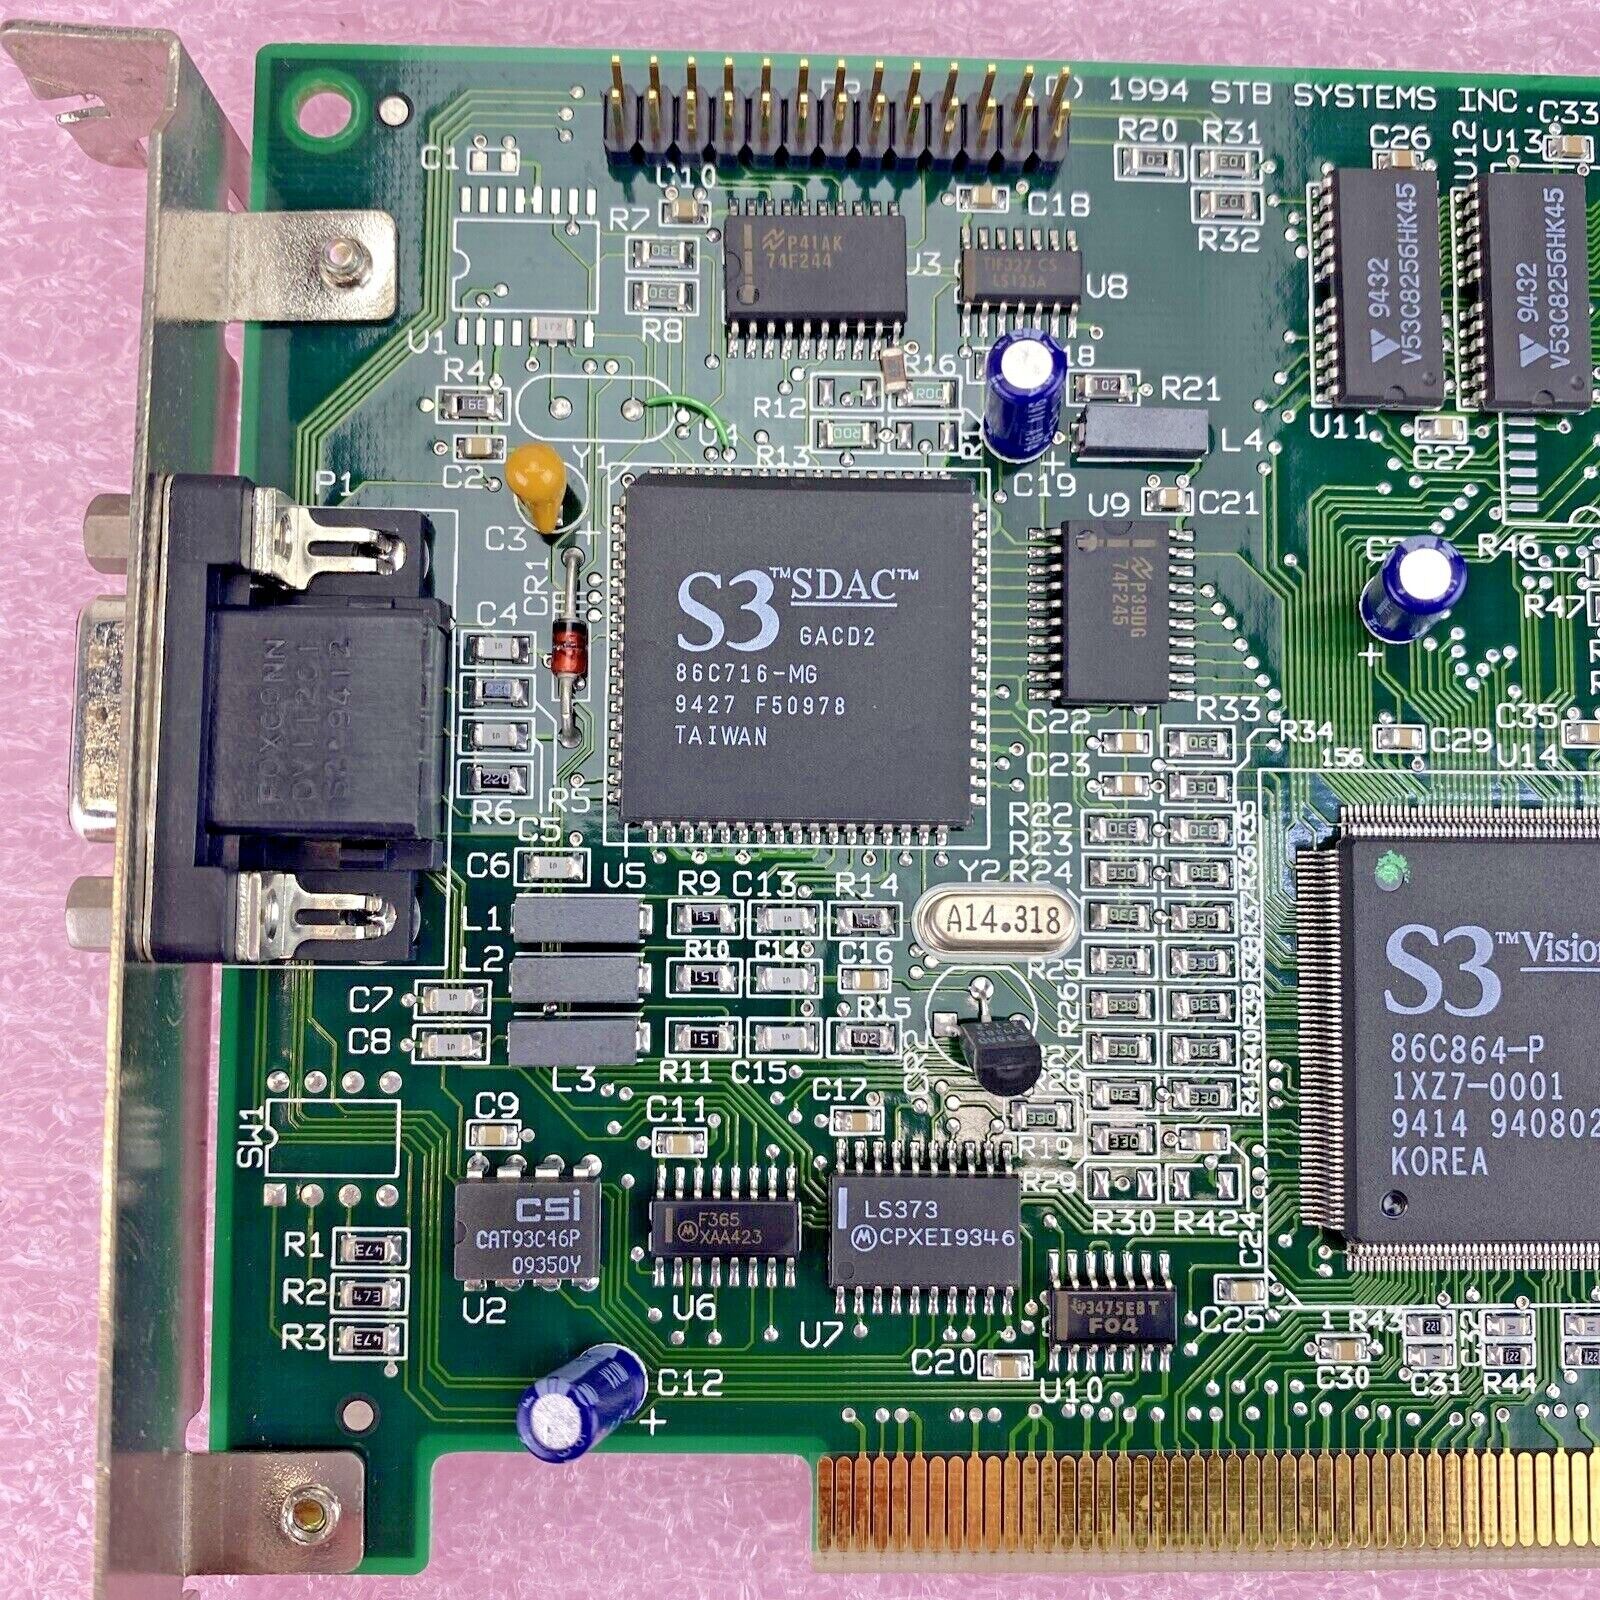 STB Powergraph Pro 1X0-0260-309 210-0142-002 EKSUSA864PCI PCI VGA Video Card